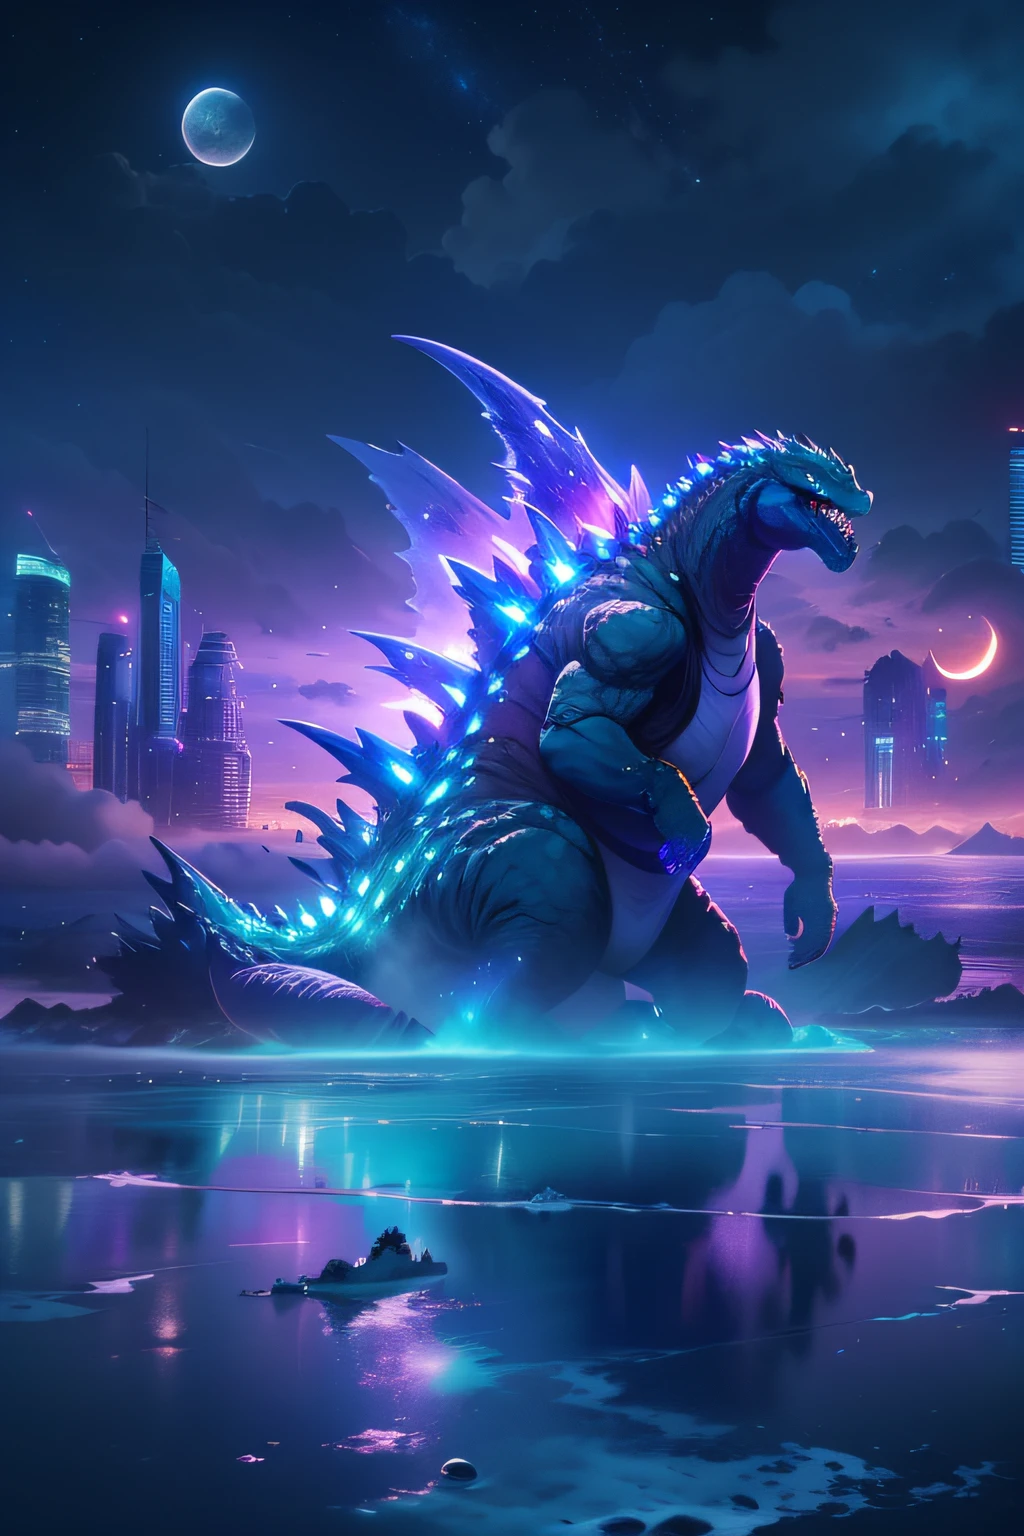 Godzilla , el océano，El fondo es una ciudad futurista, estilo ciencia ficción, azul y violeta, brillantemente, Fondo del cielo por la noche，Hay muchas estrellas y una luna que se divide en dos. Ultra foto realismo